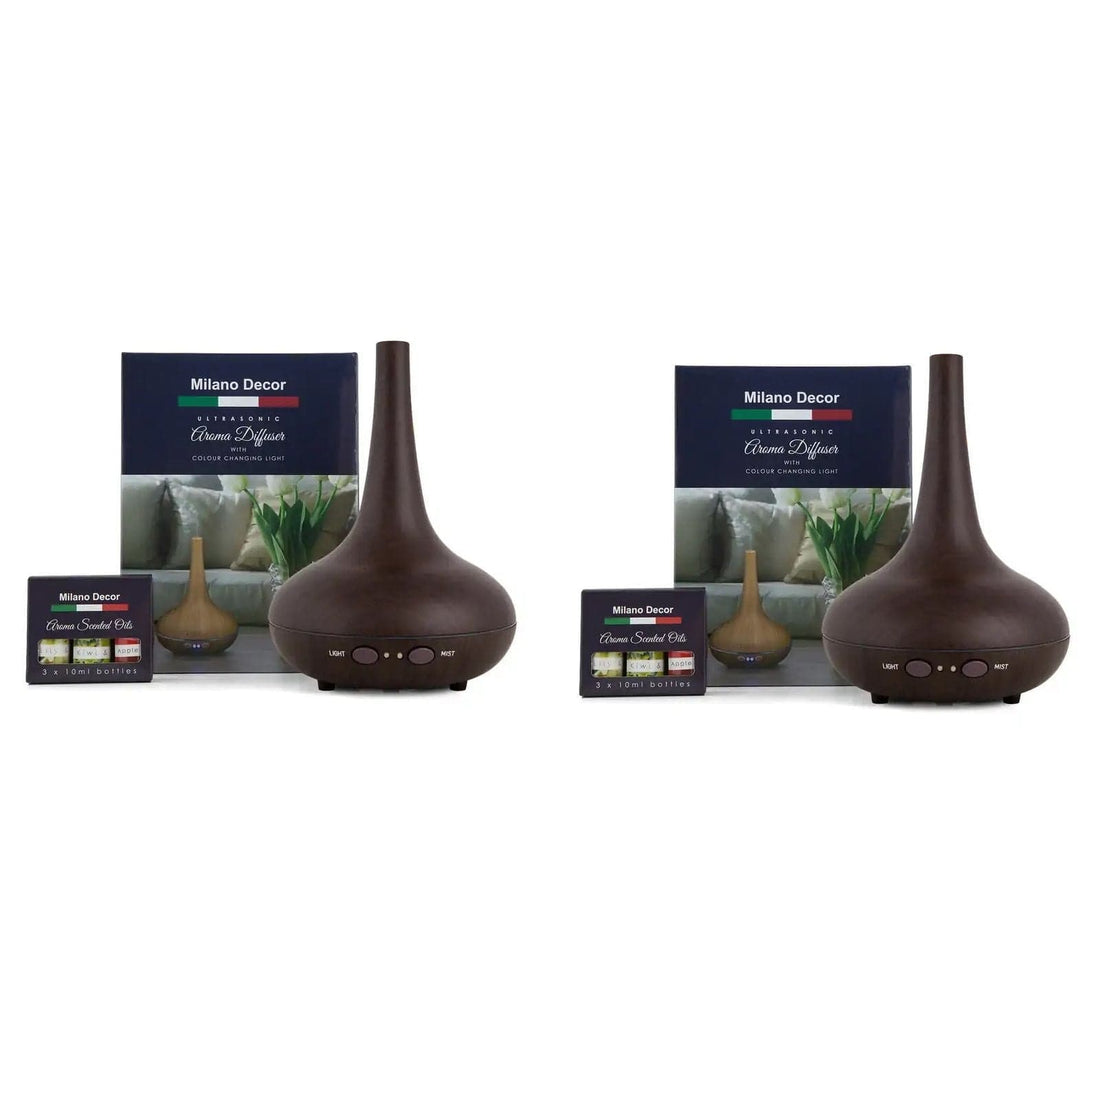 2 x Milano Decor Ultrasonic Aroma Diffusers Humidifier + 6 Diffuser Oils Set-Home Fragrances-PEROZ Accessories